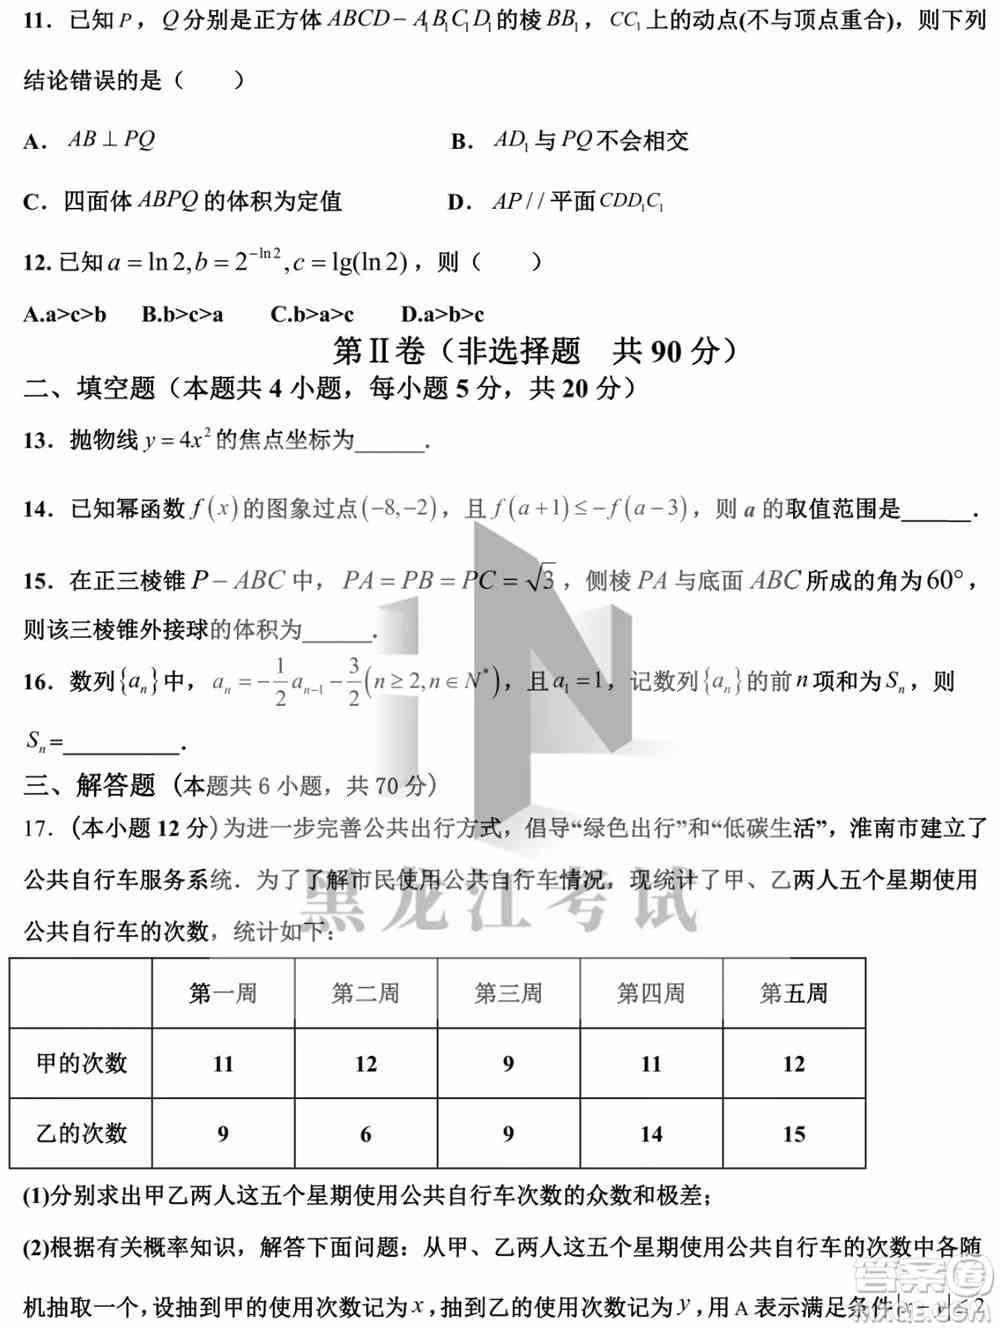 哈尔滨市第九中学校2021-2022学年度下学期开学考试高三数学文科试题及答案